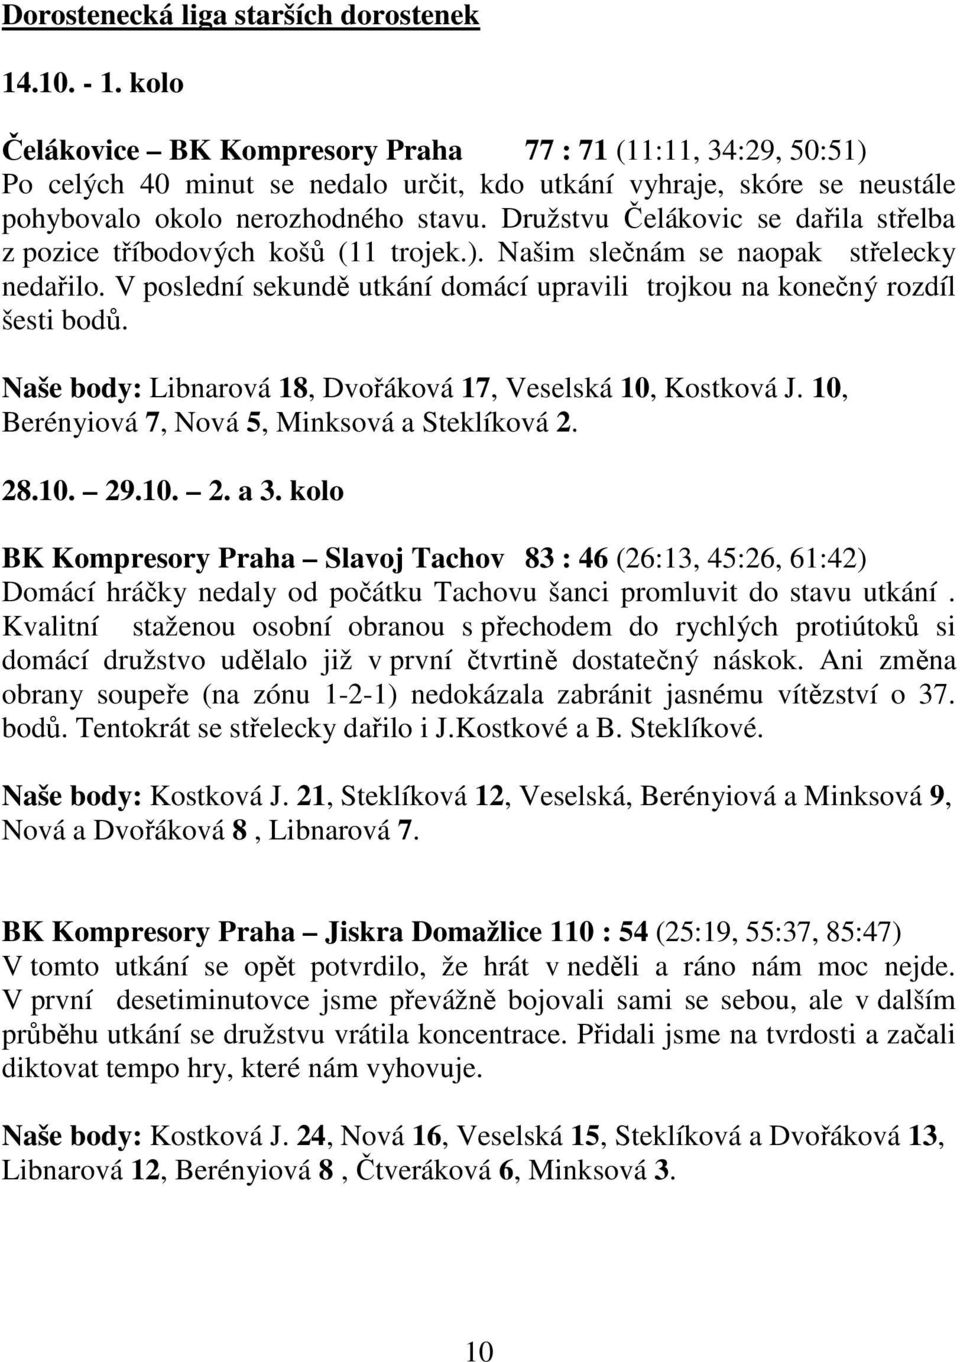 Družstvu Čelákovic se dařila střelba z pozice tříbodových košů (11 trojek.). Našim slečnám se naopak střelecky nedařilo. V poslední sekundě utkání domácí upravili trojkou na konečný rozdíl šesti bodů.